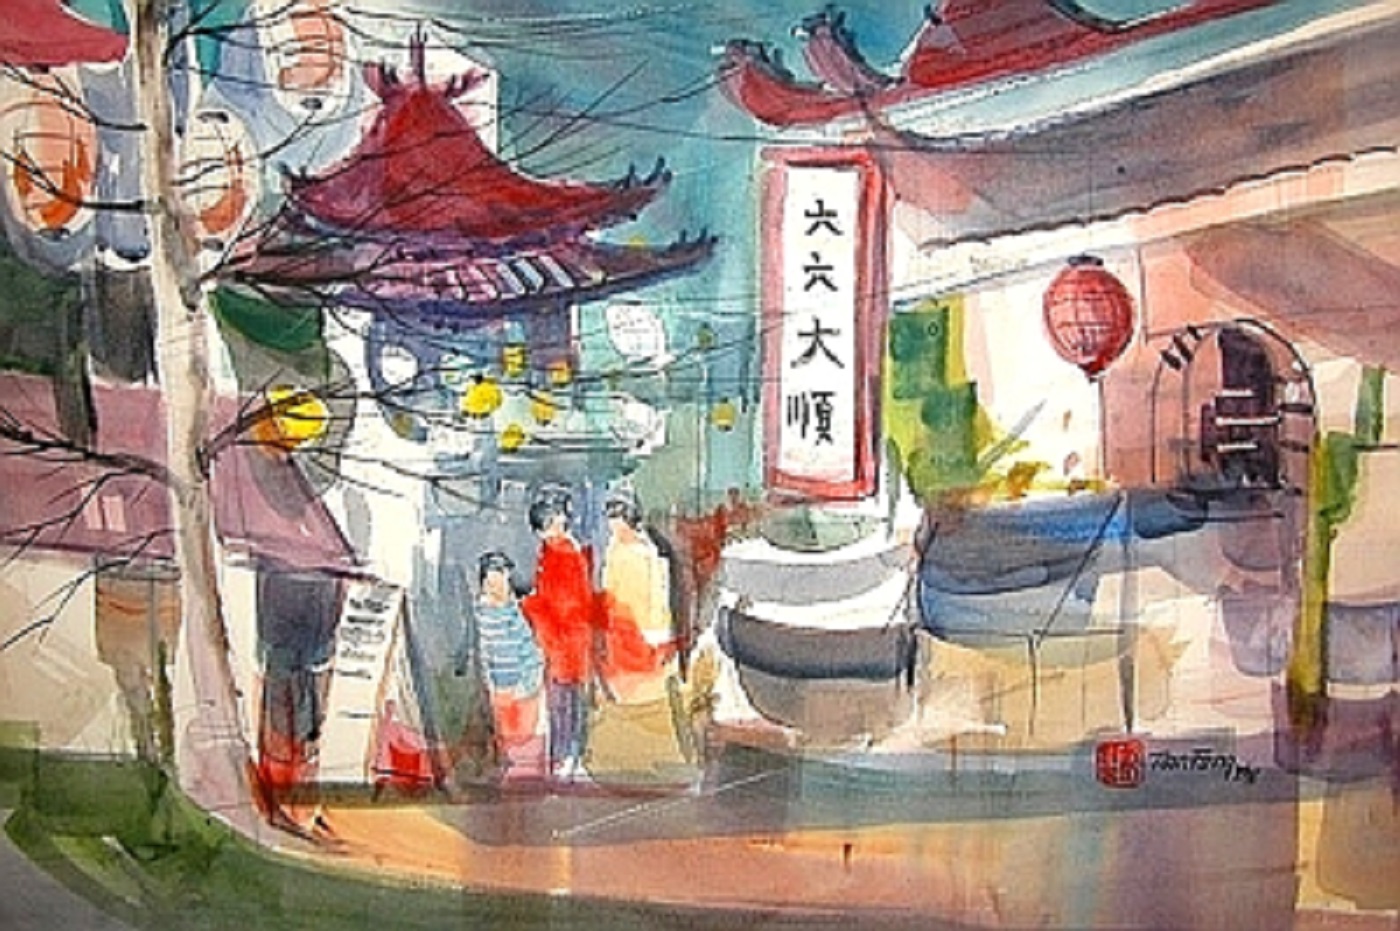 "Gin Ling Way" 15" x 22" Watercolor © Tom Fong